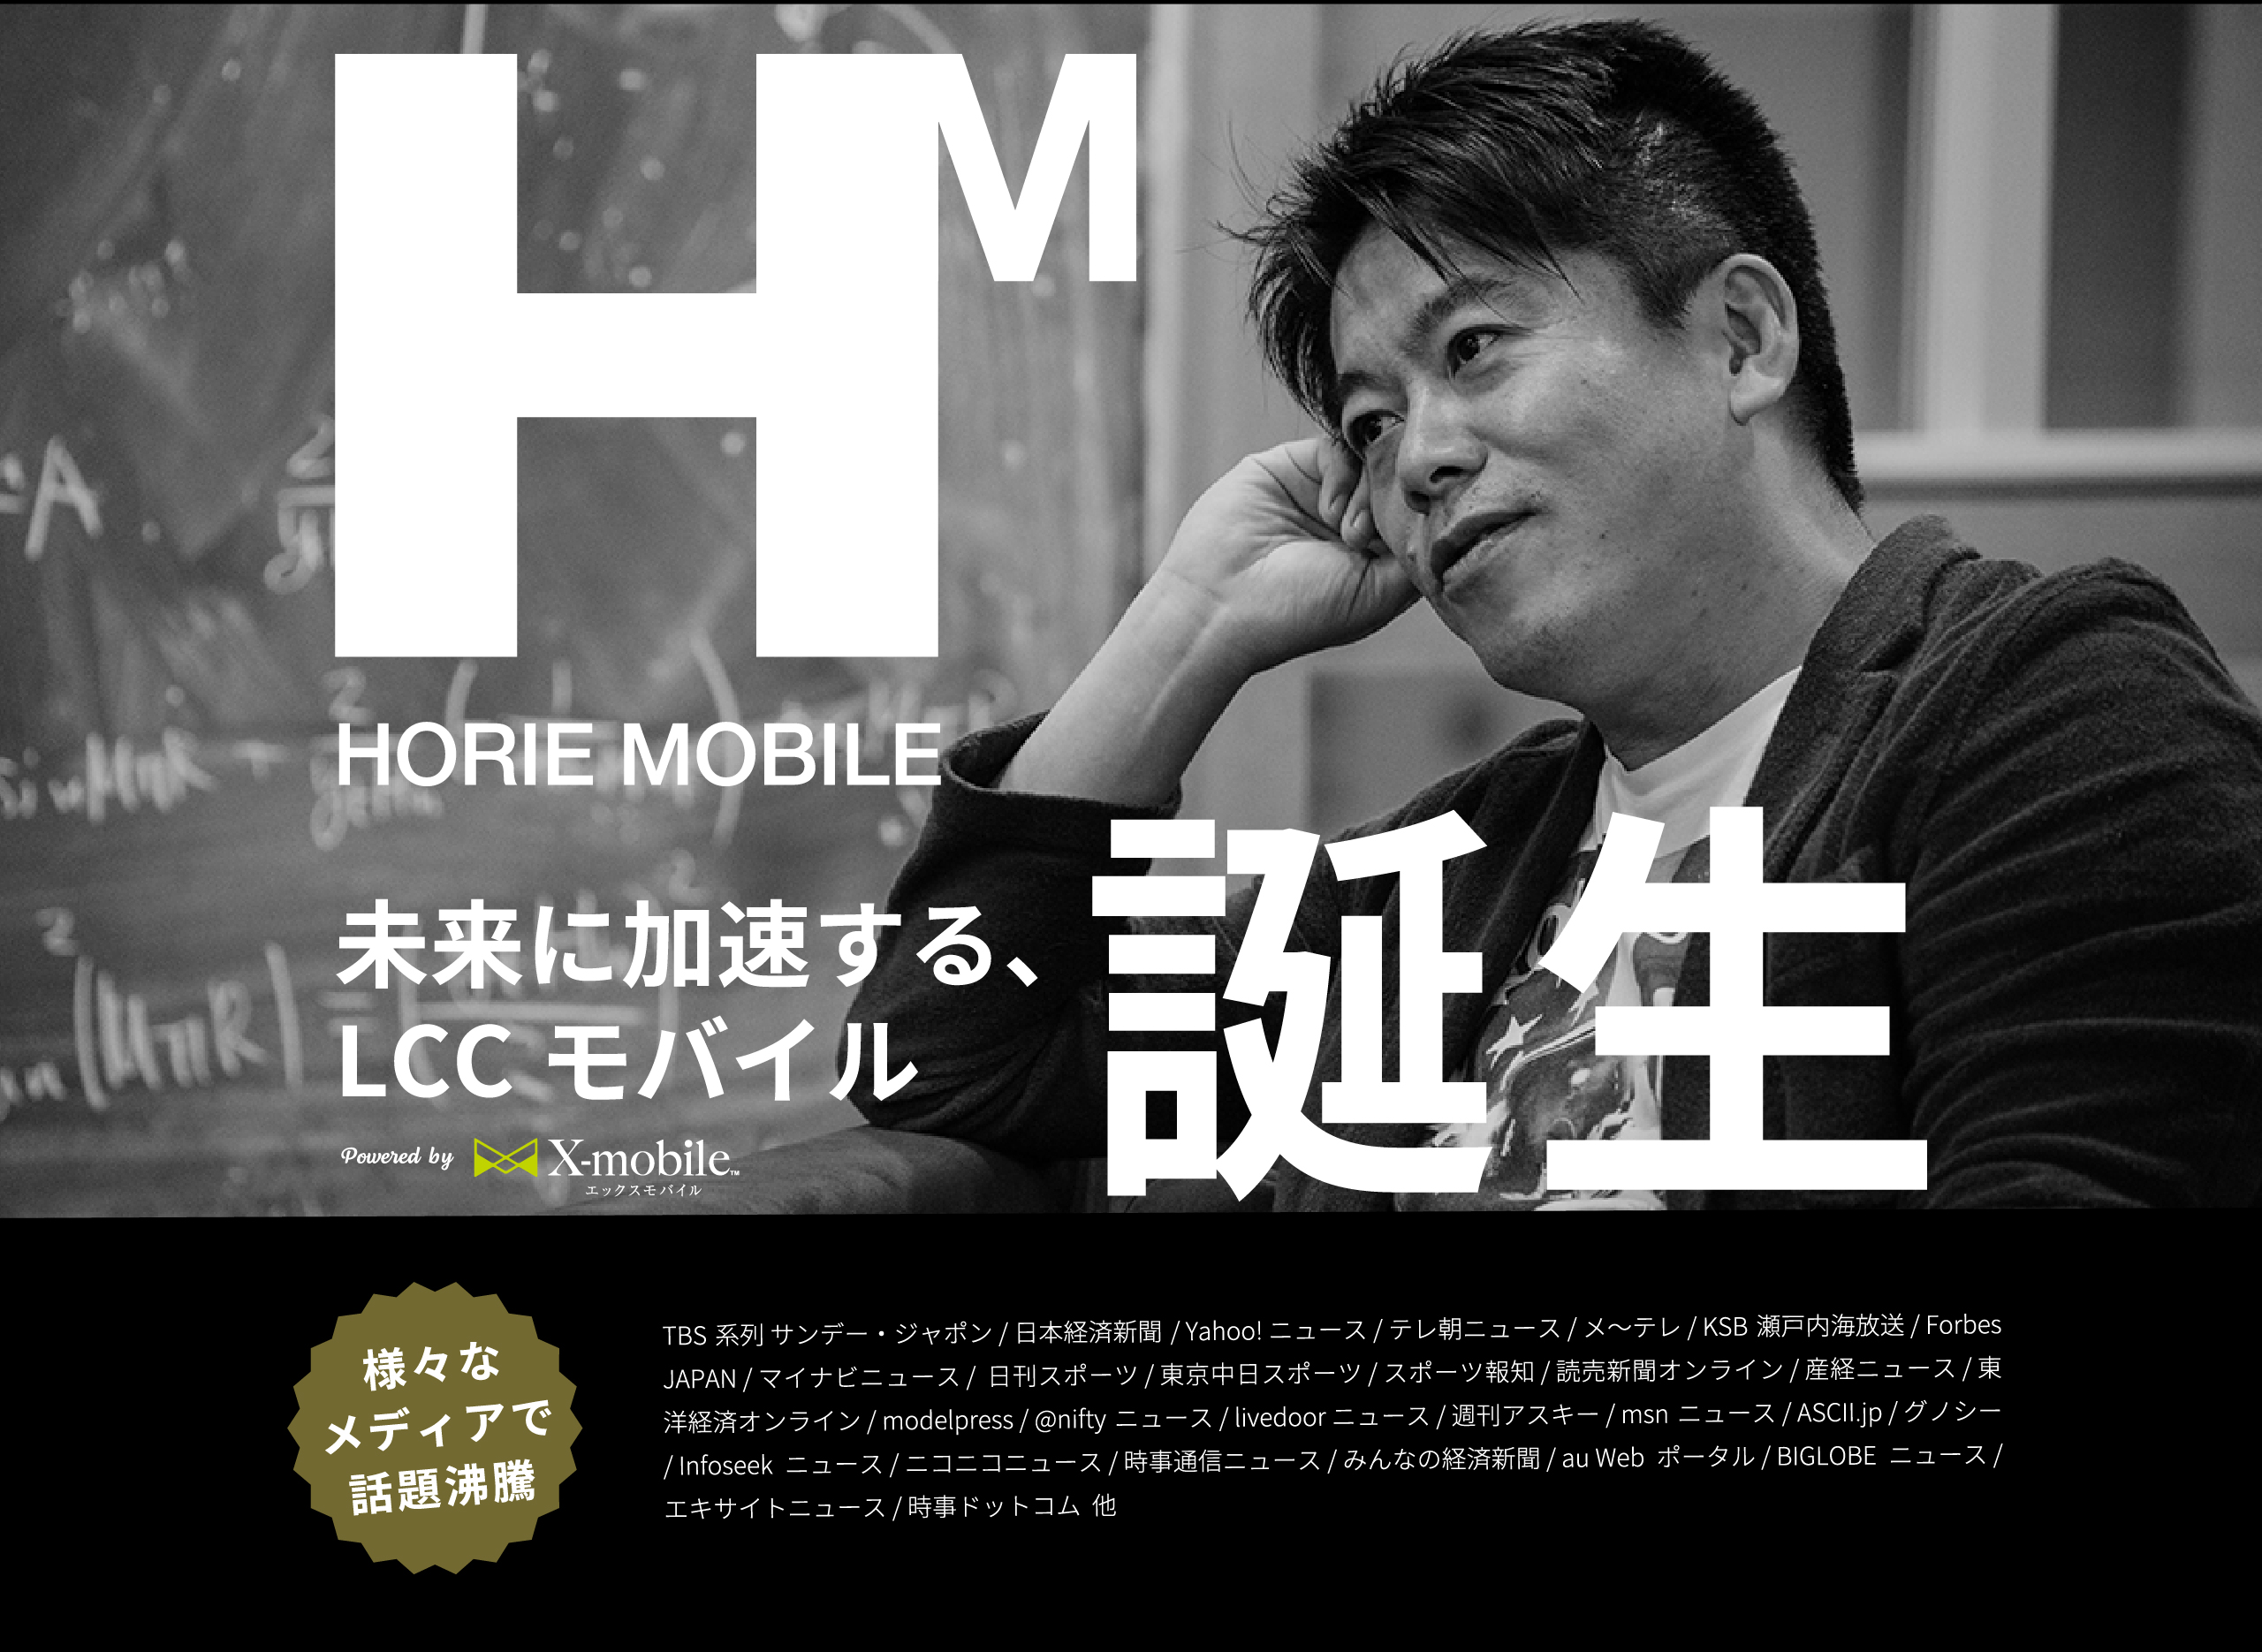 Horie Mobile slide 1 pc